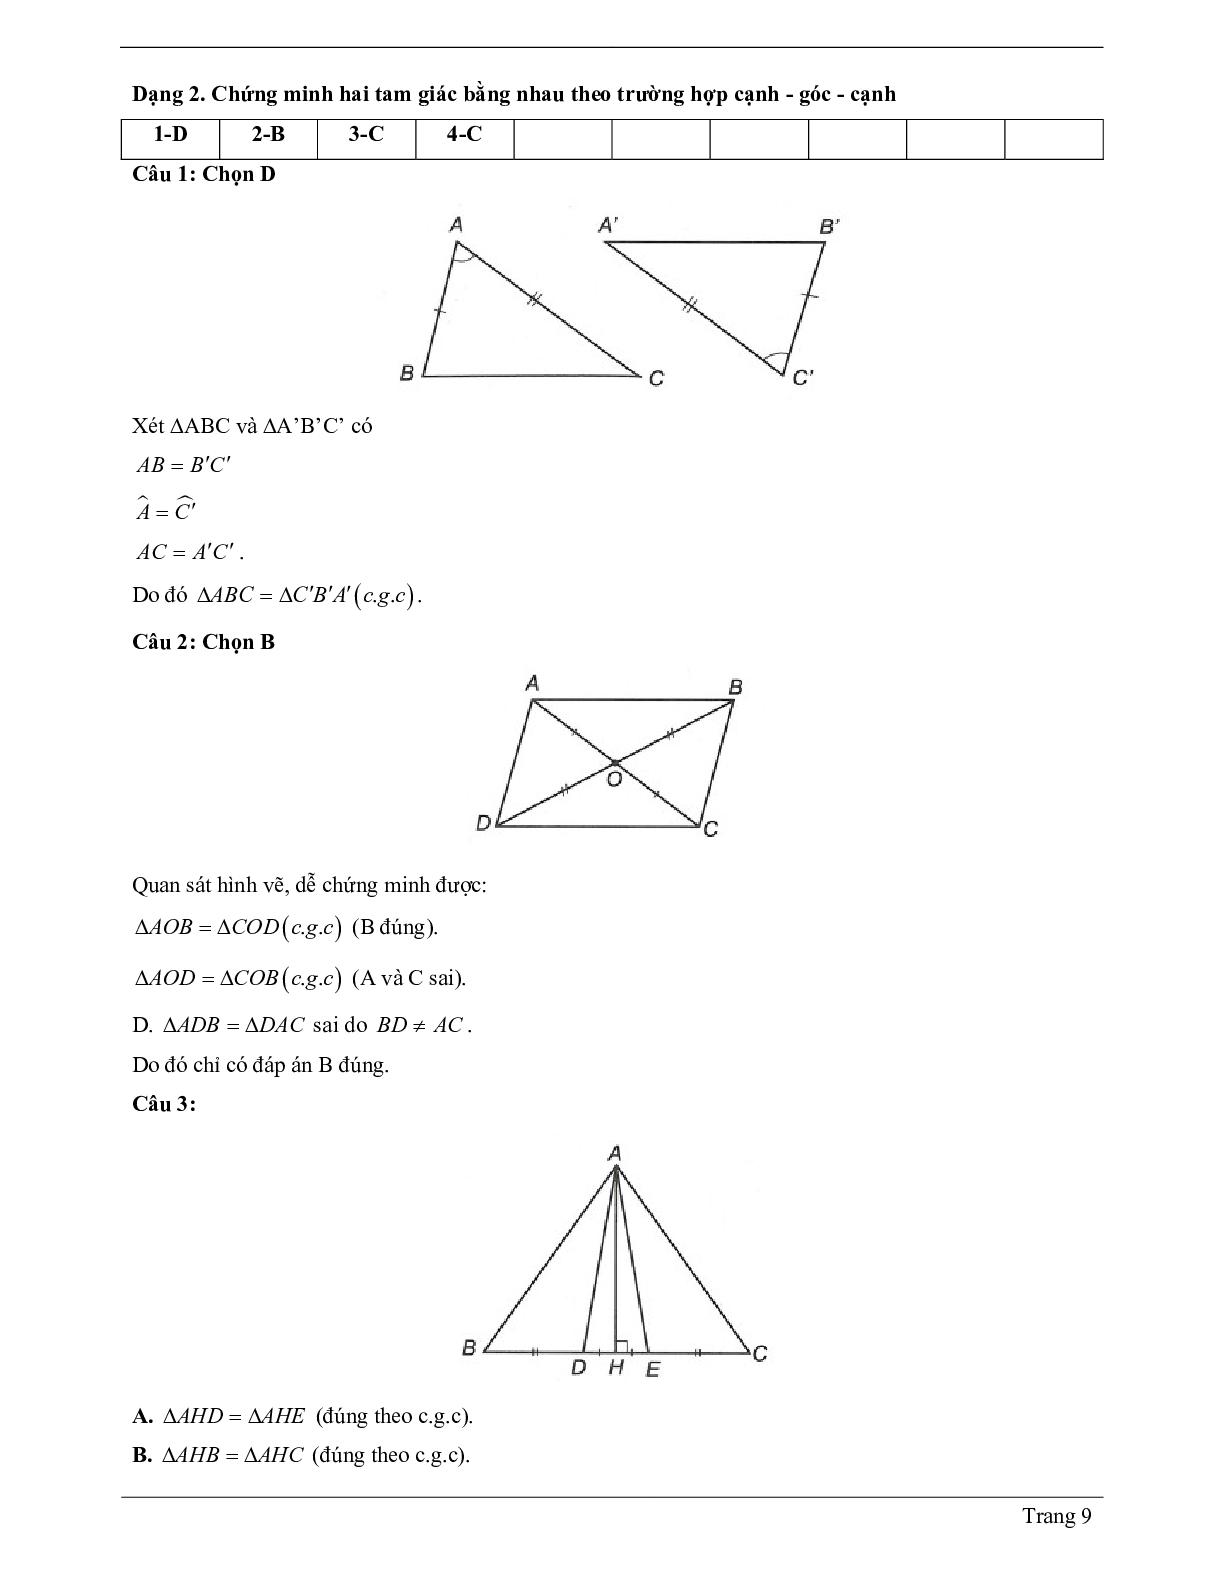 Lý thuyết Toán lớp 7 có đáp án: Trường hợp bằng nhau thứ hai của tam giác: cạnh - góc - cạnh (c.g.c) (trang 9)